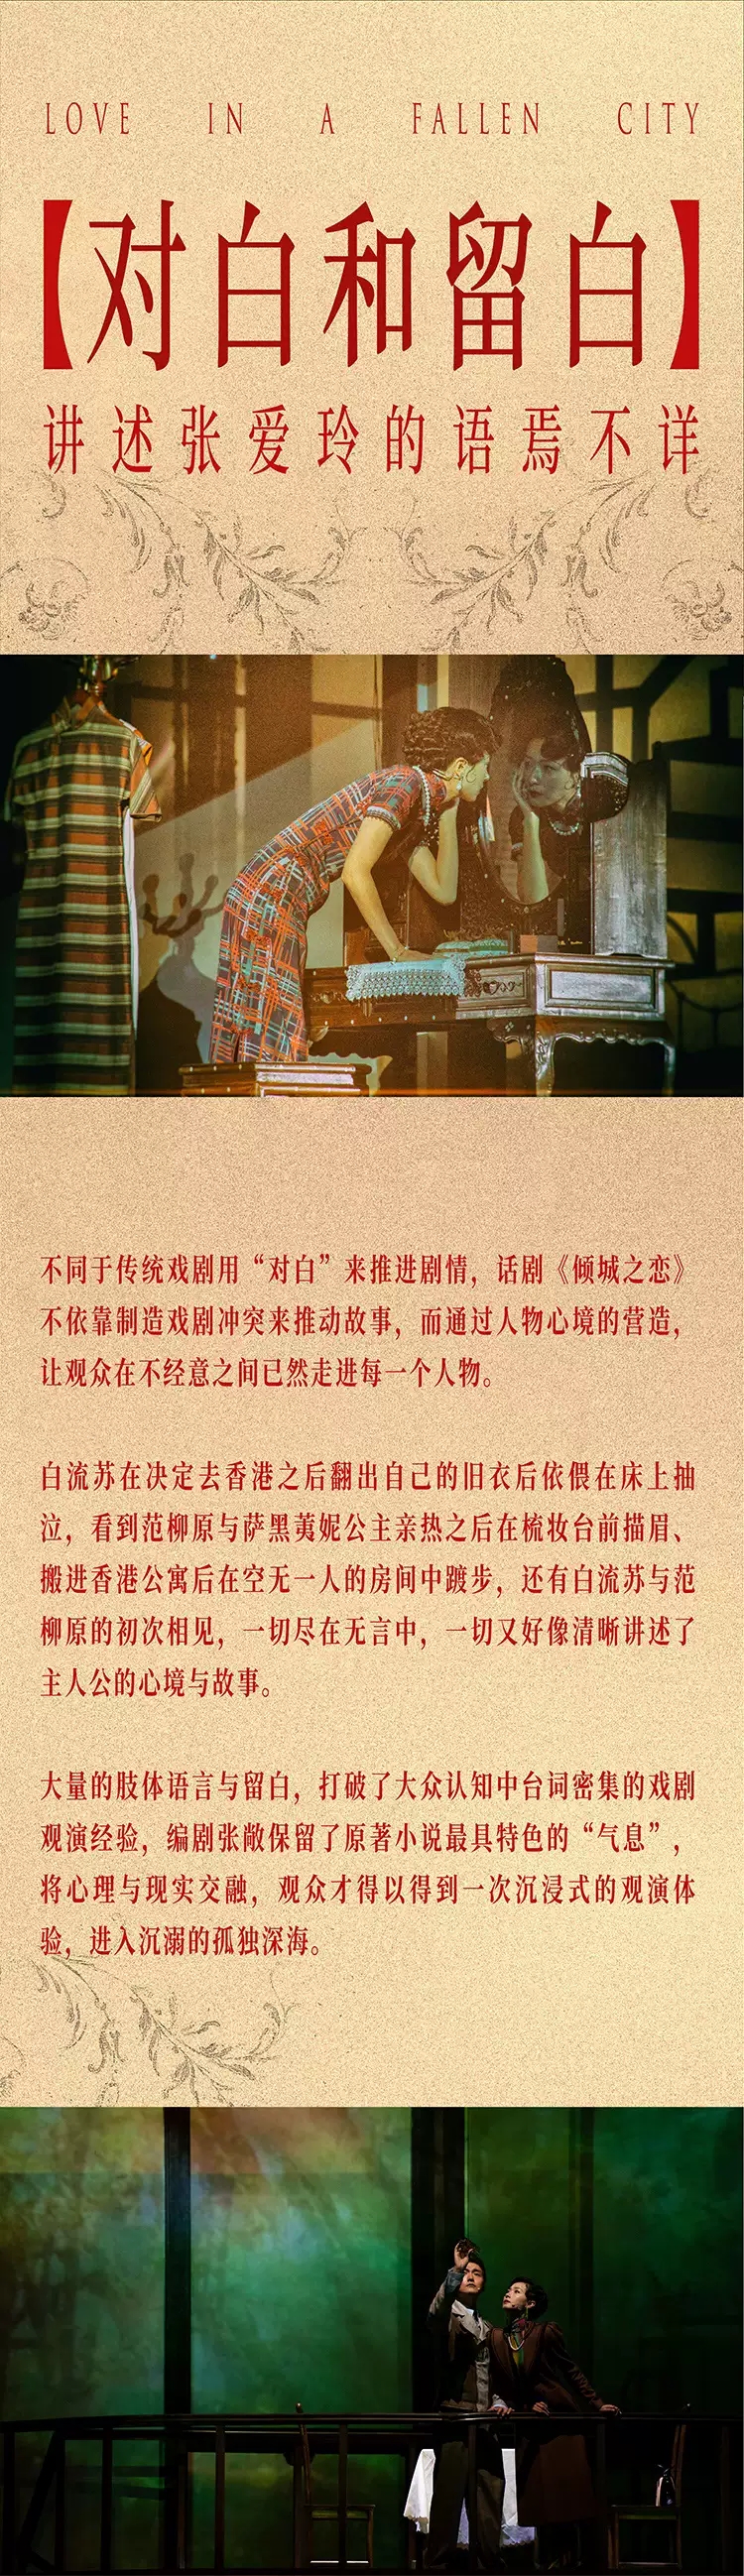 2022叶锦添导演 万茜、宋洋主演舞台剧《倾城之恋》-北京站